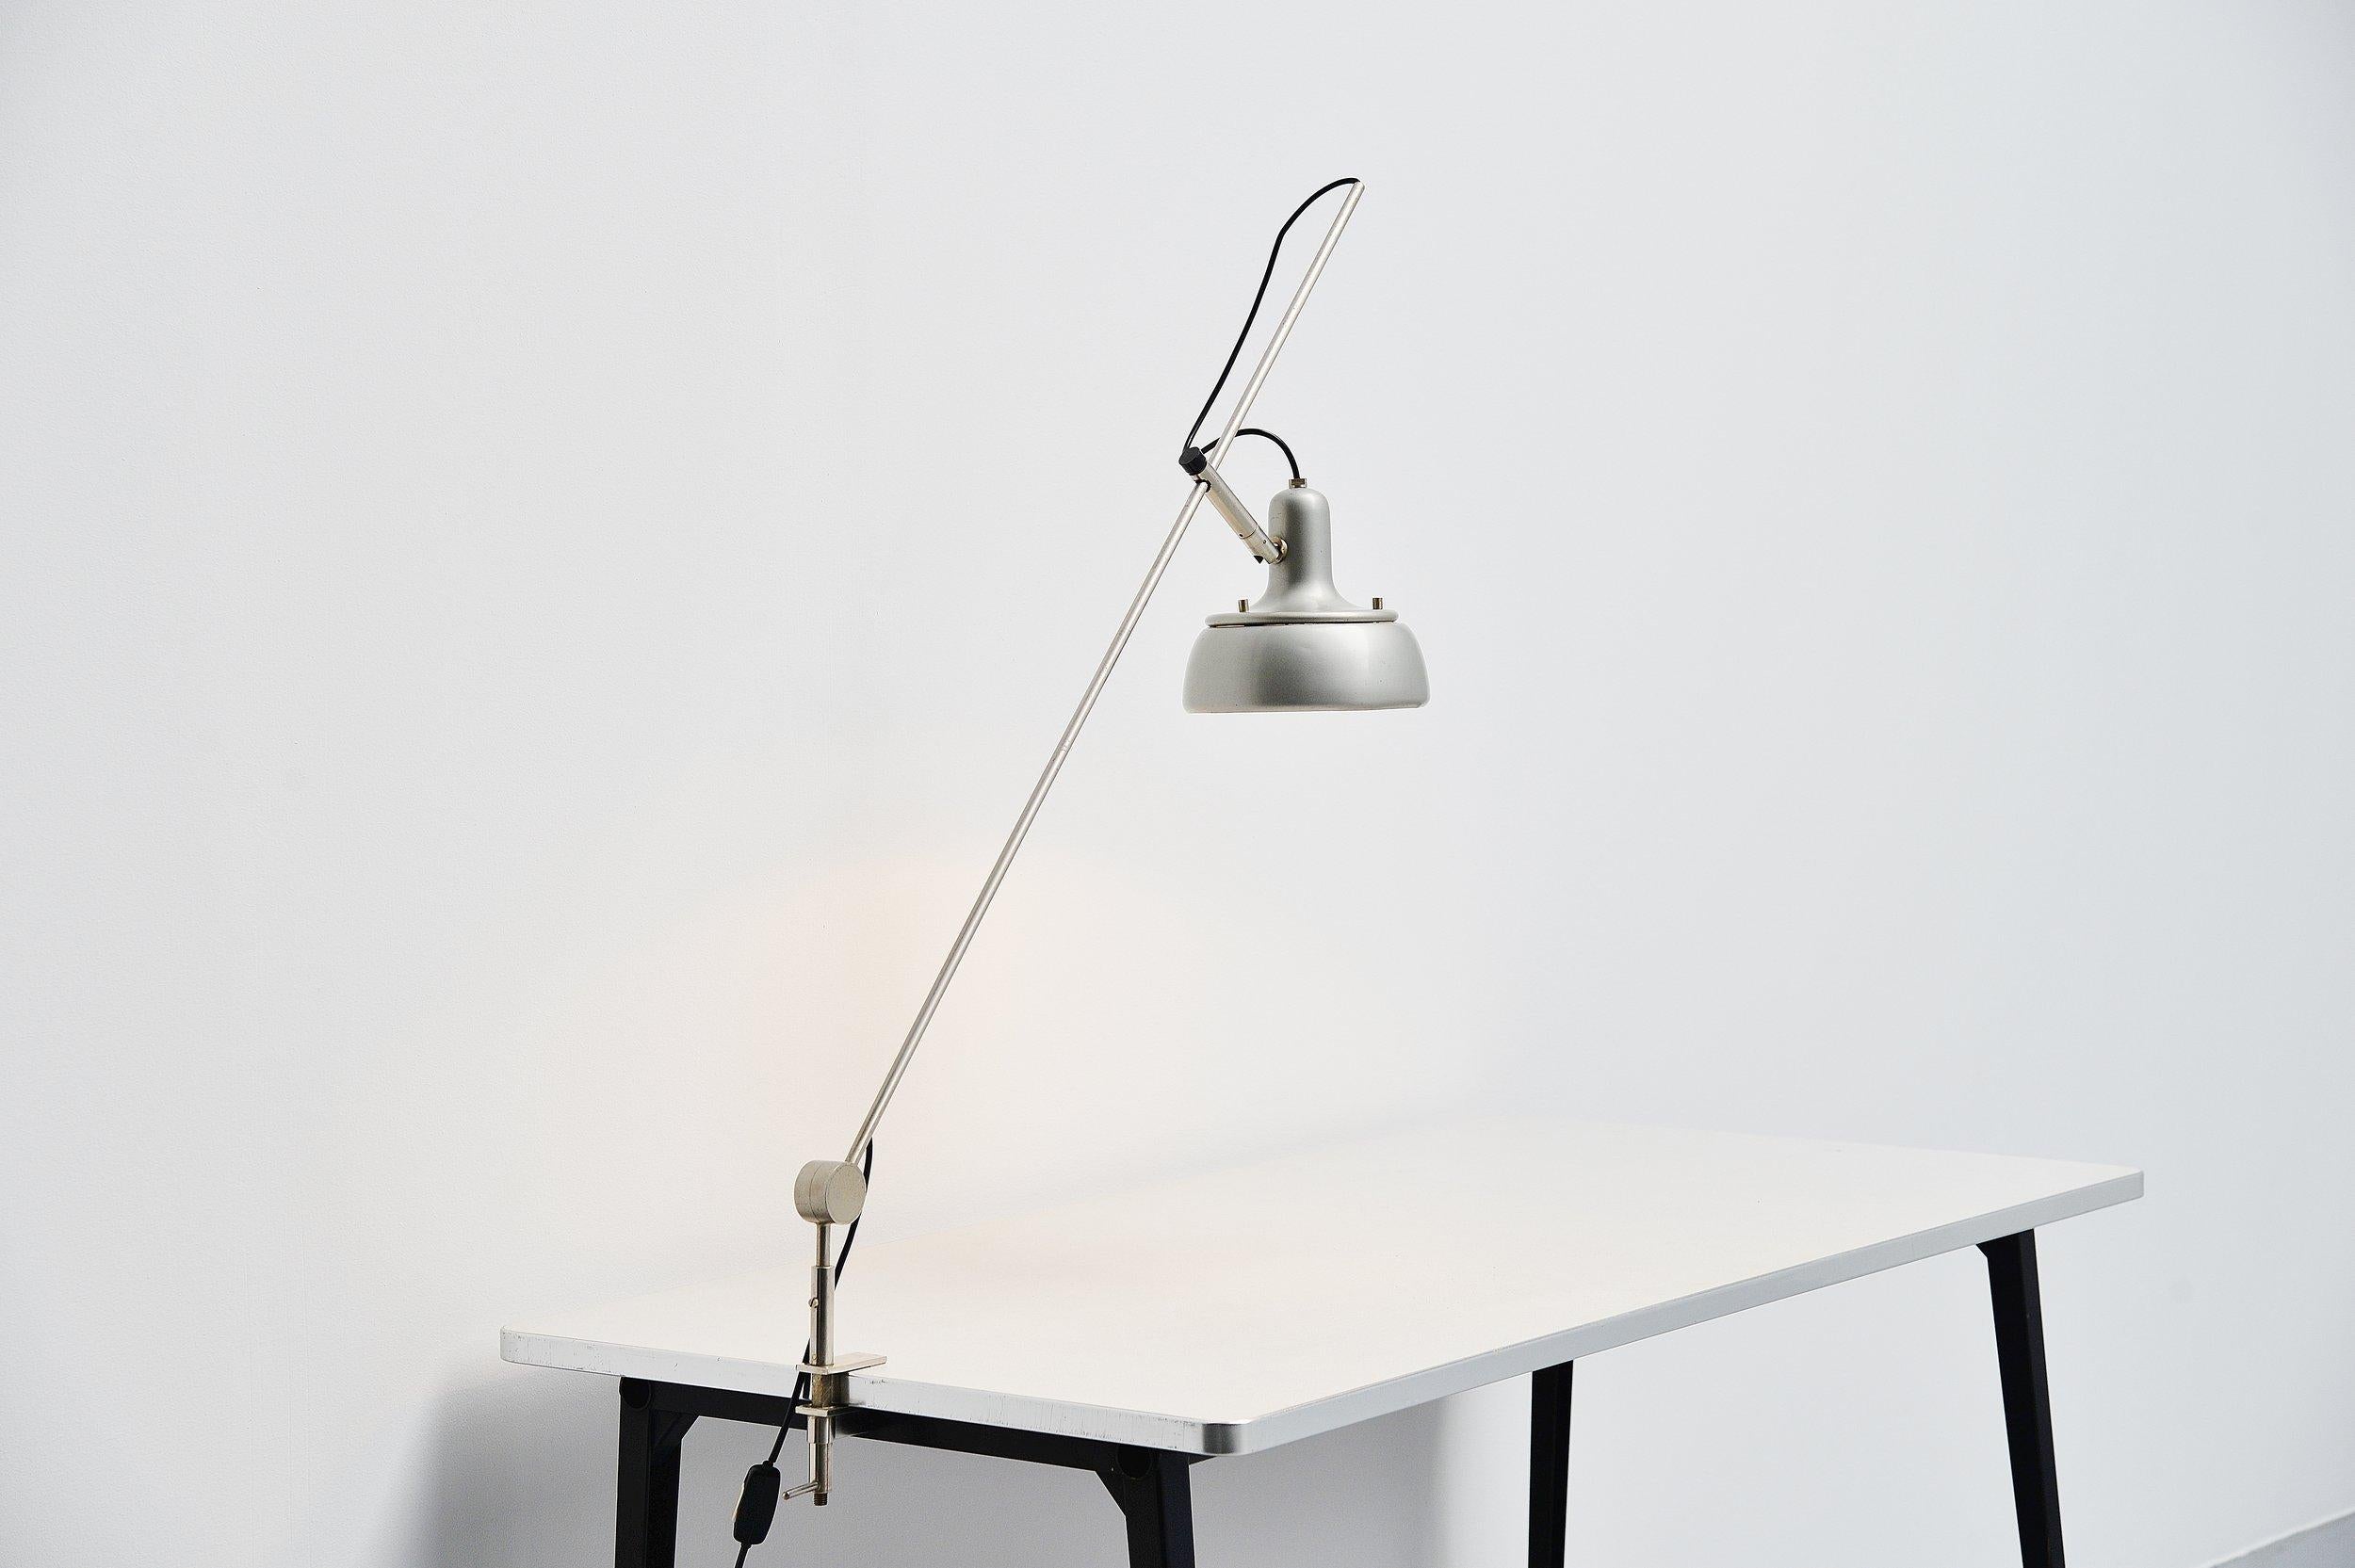 Sehr seltene Tischklemmleuchte Modell 292-r, entworfen von Giuseppe Ostuni und hergestellt von Oluce, Italien 1950. Diese Lampe ist der Vorläufer der ähnlichen, aber kleineren Schreibtischlampe von Tito Agnoli, Modell 255. Diese Lampe ist viel